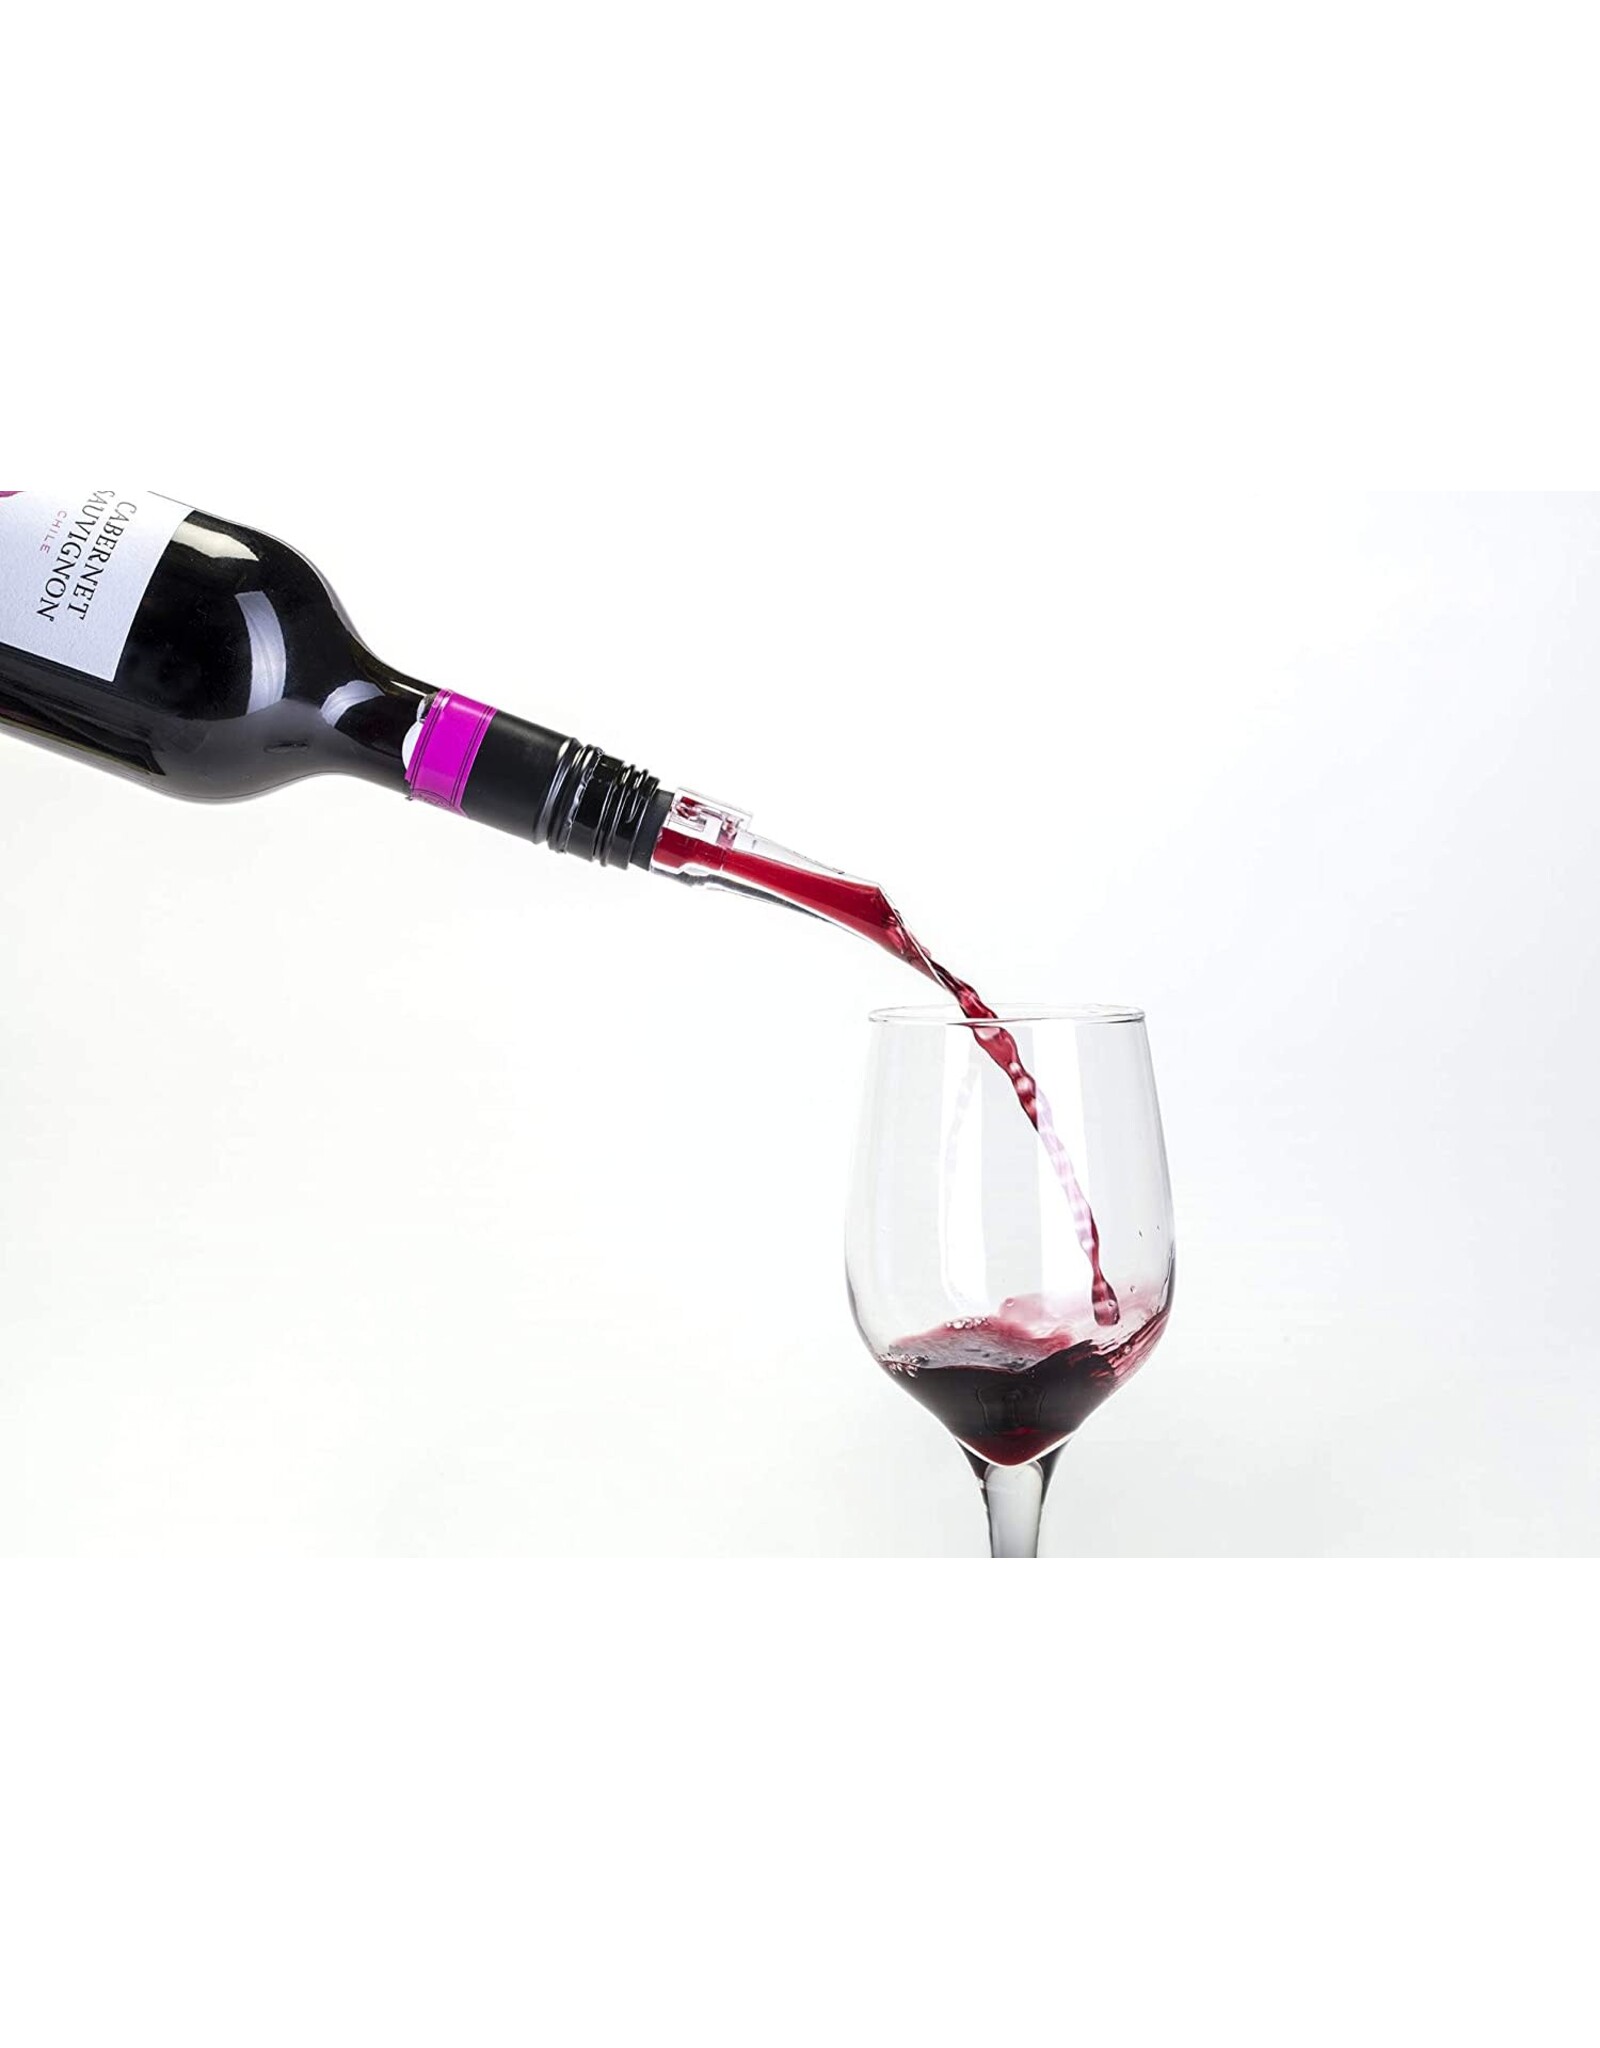 Cork Pops VinOair Wine Aerator In-Bottle Non-Drip Pourer